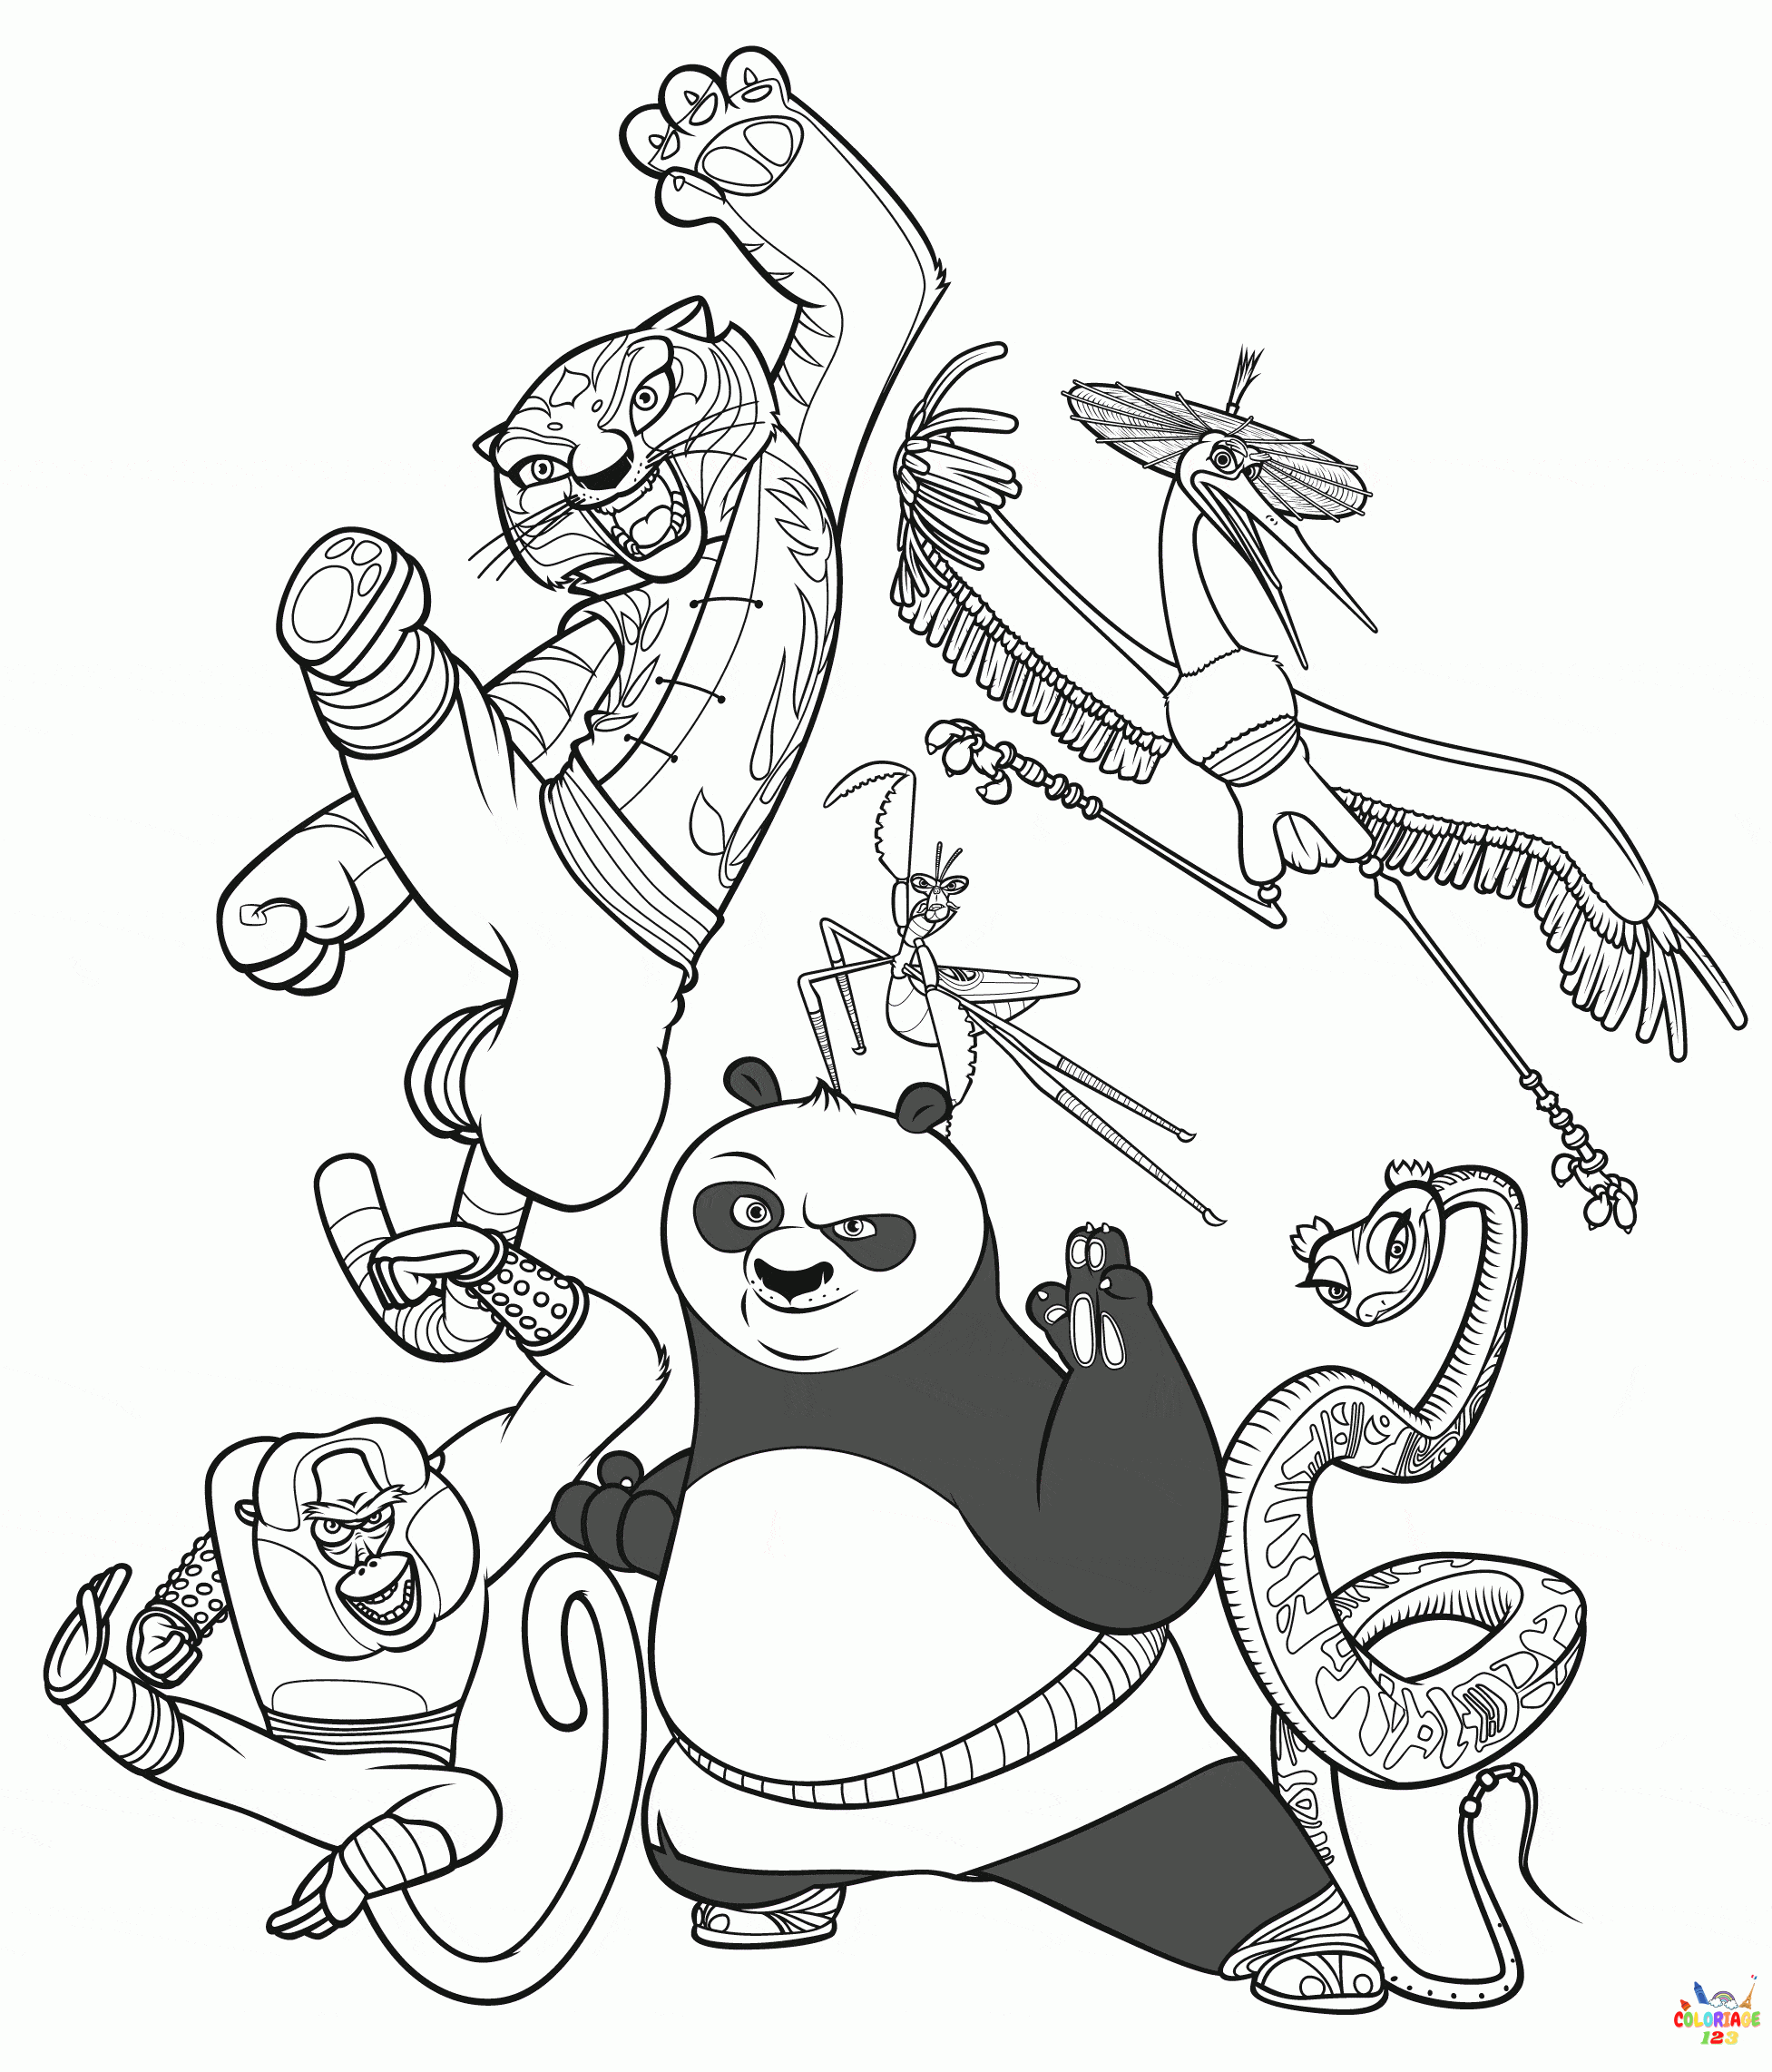 Kung fu Panda03